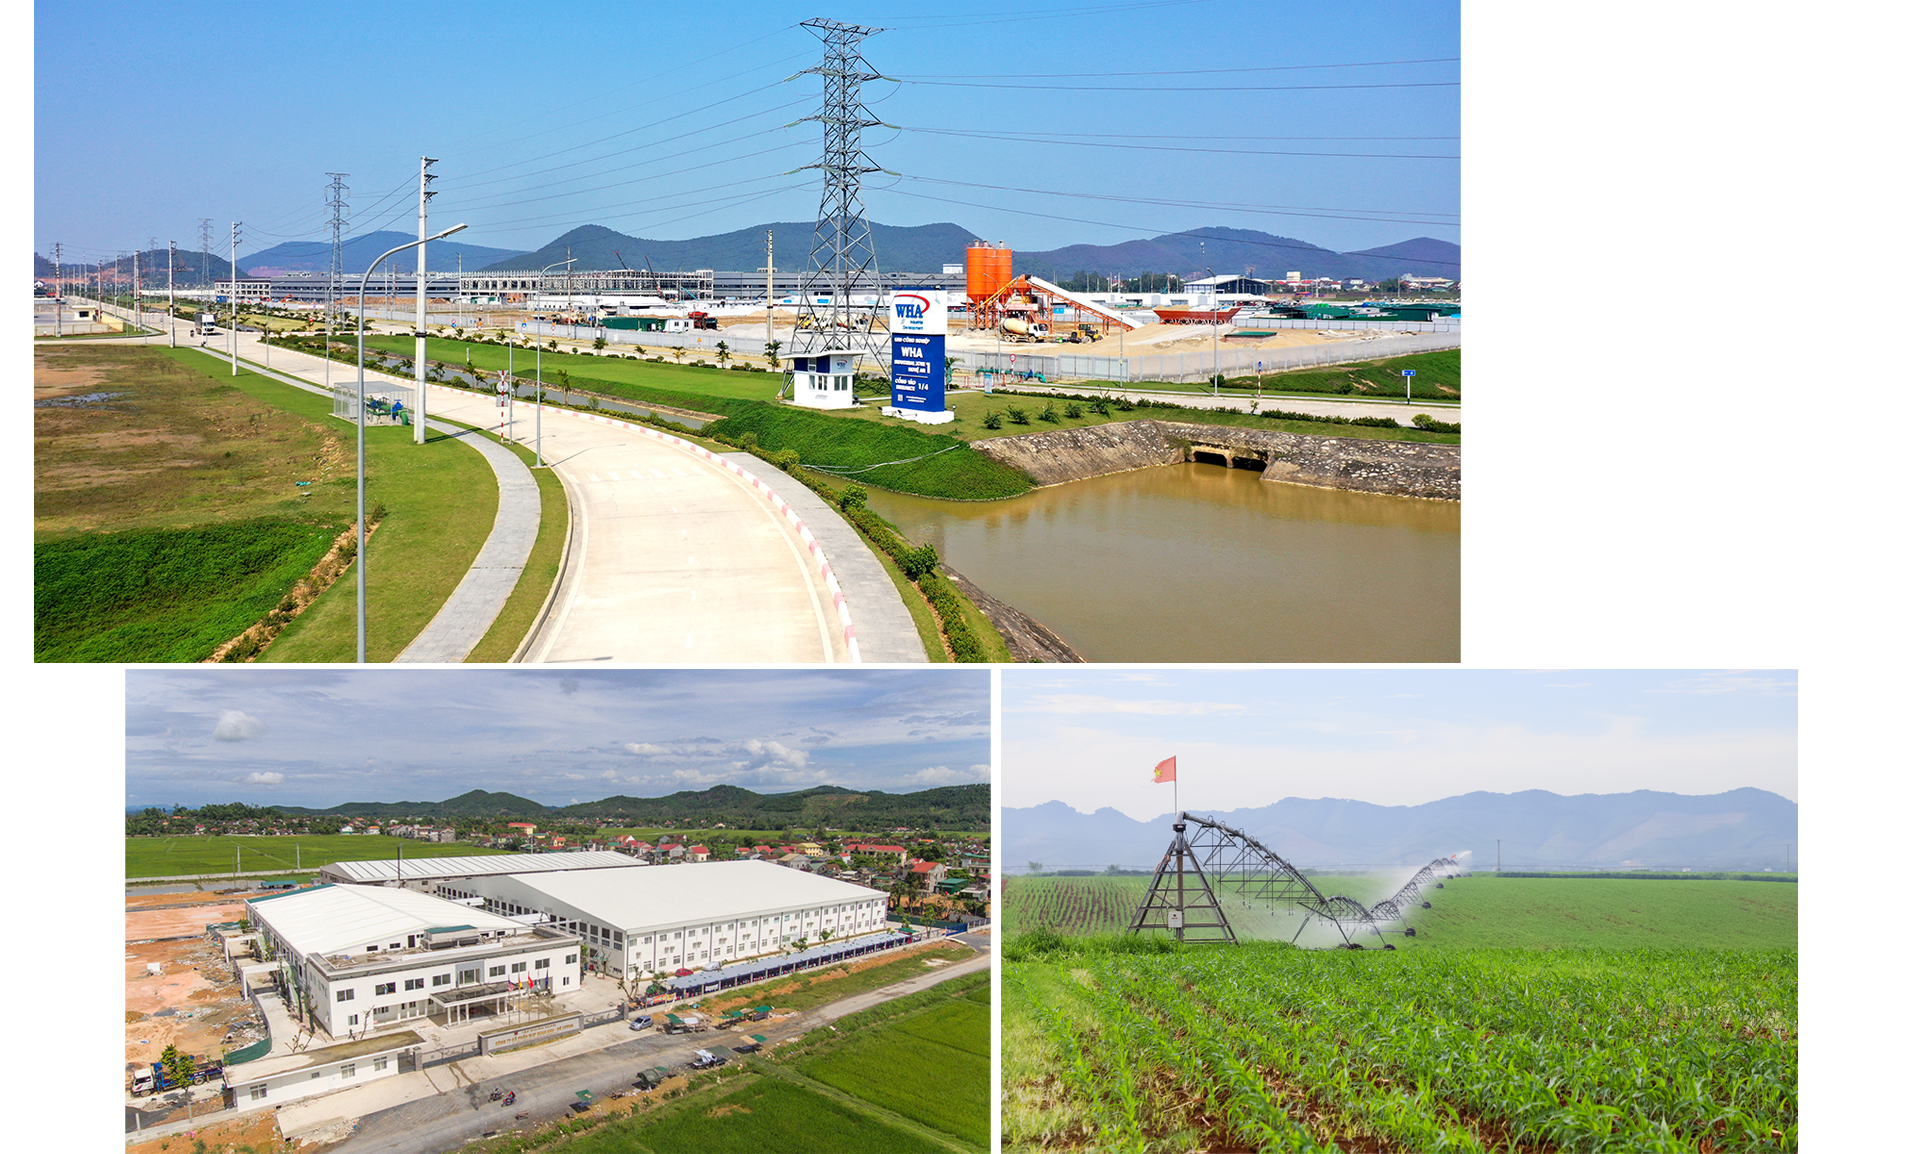 Khu Công nghiệp WHA Industrial Zone 1 Nghệ An; Các khu công nghiệp nhỏ và vừa hình thành ở nhiều địa phương. Trong ảnh Nhà máy may ở Đô Lương; Mô hình sản xuất nông nghiệp ứng dụng công nghệ cao của Tập đoàn TH ở Nghĩa Đàn. Ảnh: PV-CTV